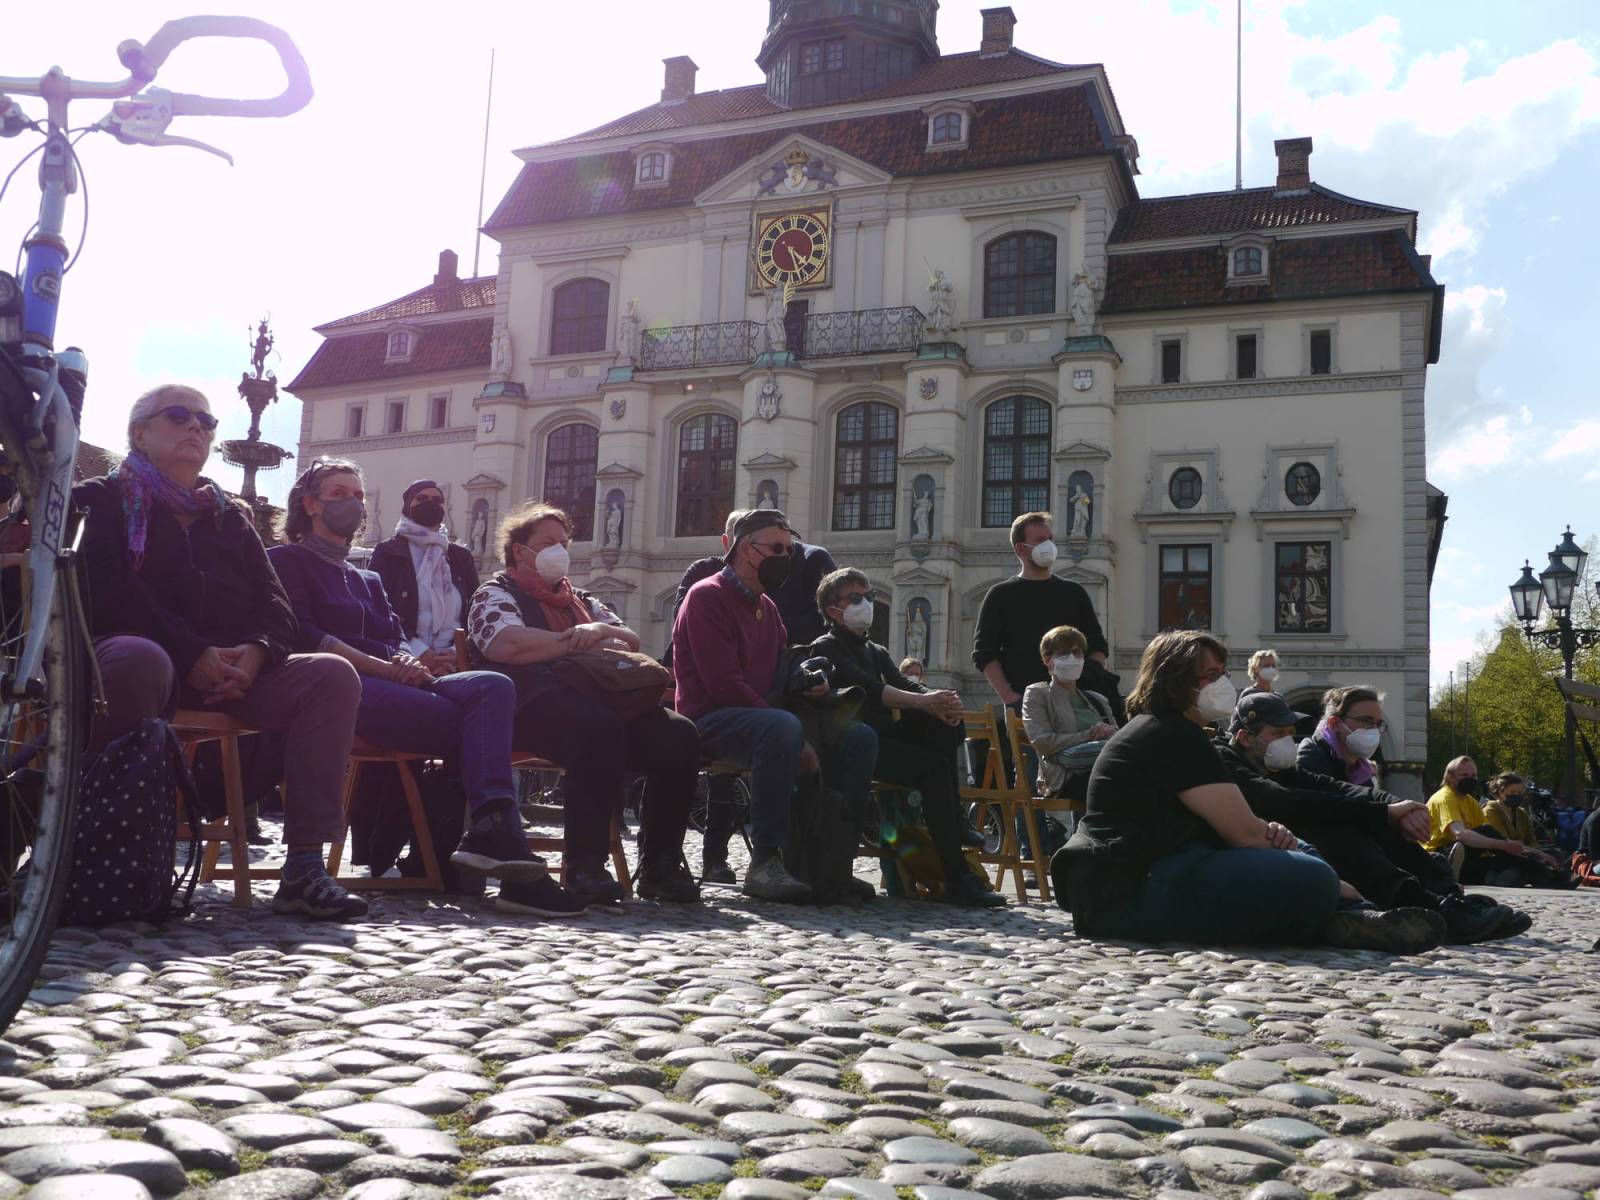 Teilnehmer*innen auf stühle sitzend, im Hintergrund das Rathaus